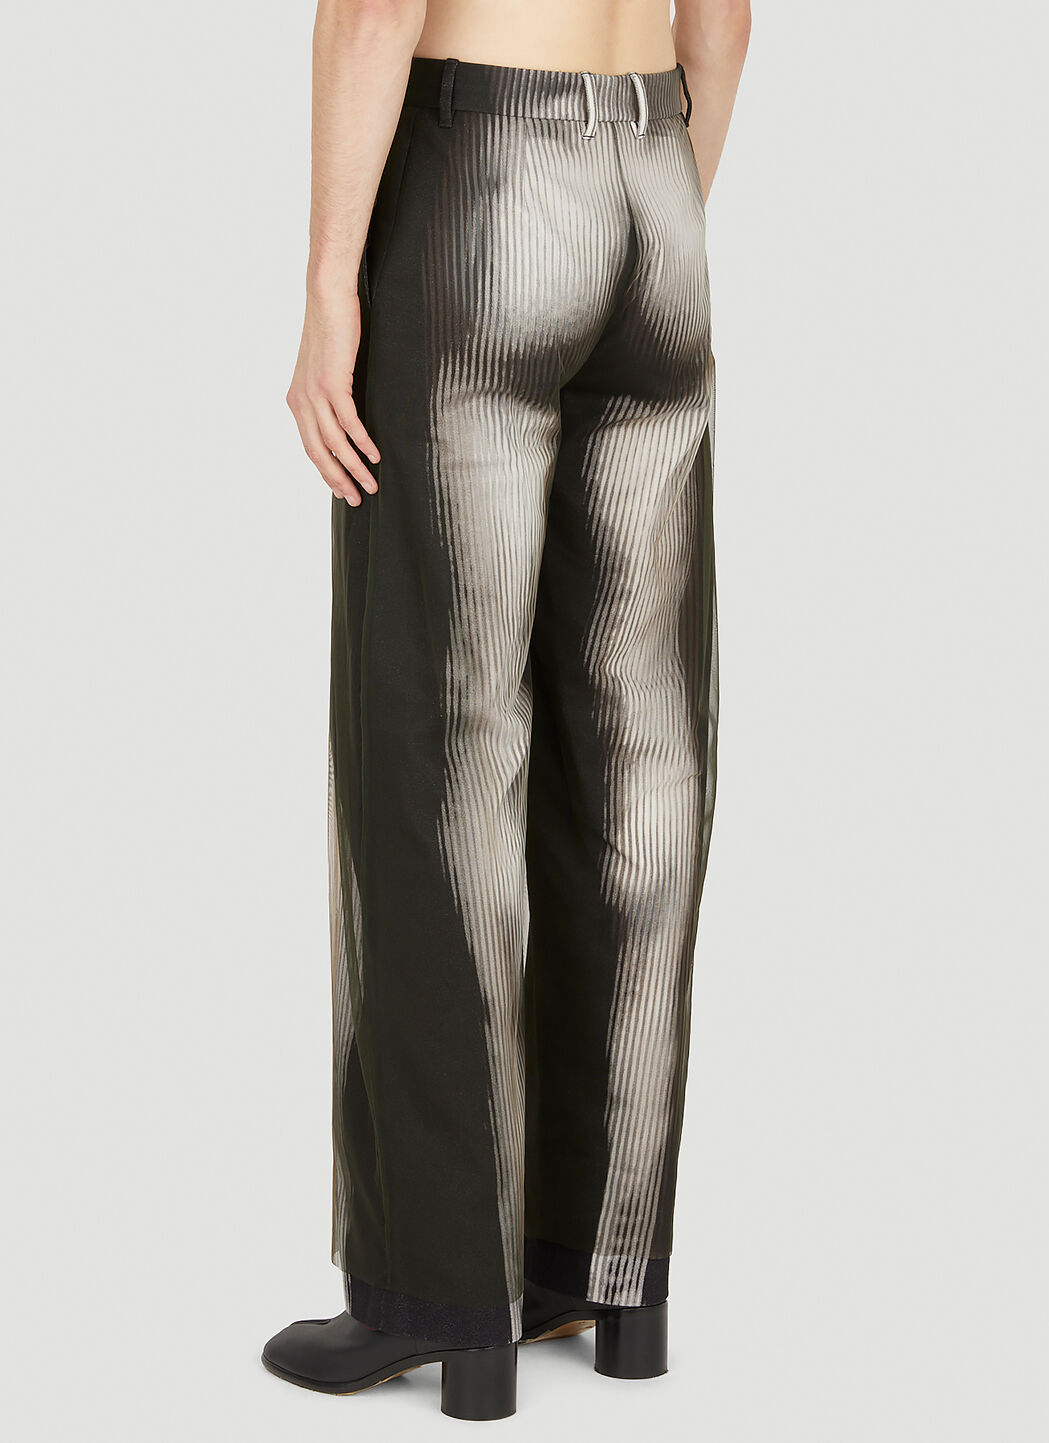 Y/Project x Jean Paul Gaultier Body Morph Pants |LN-CC